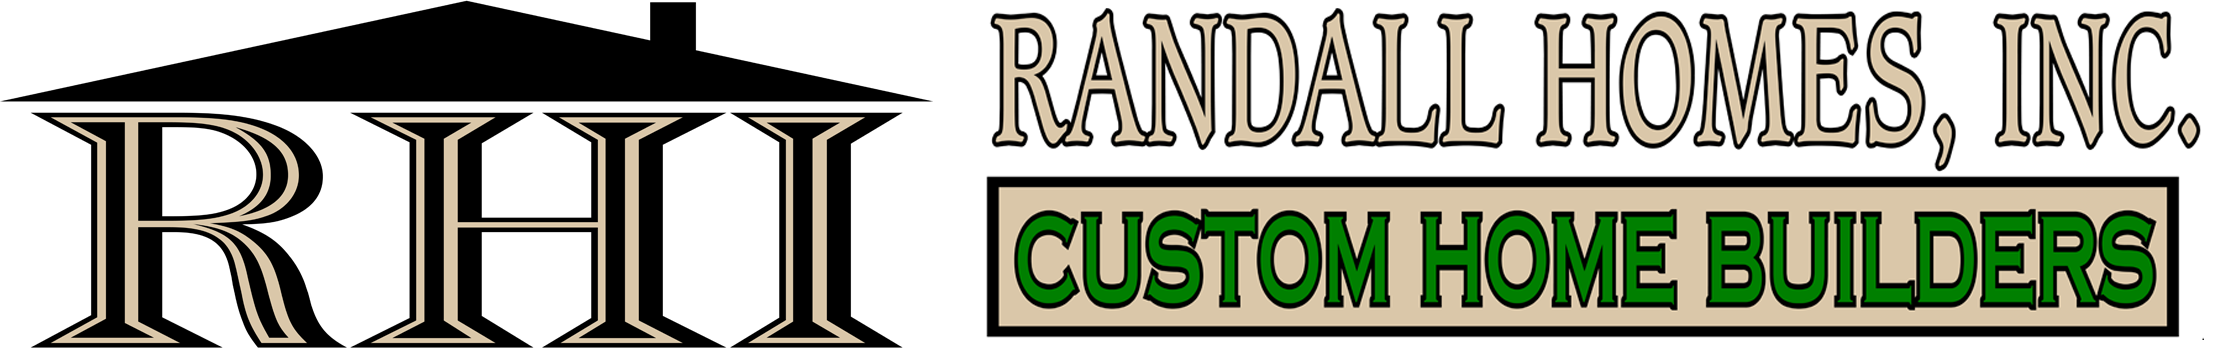 Randall Homes, Inc